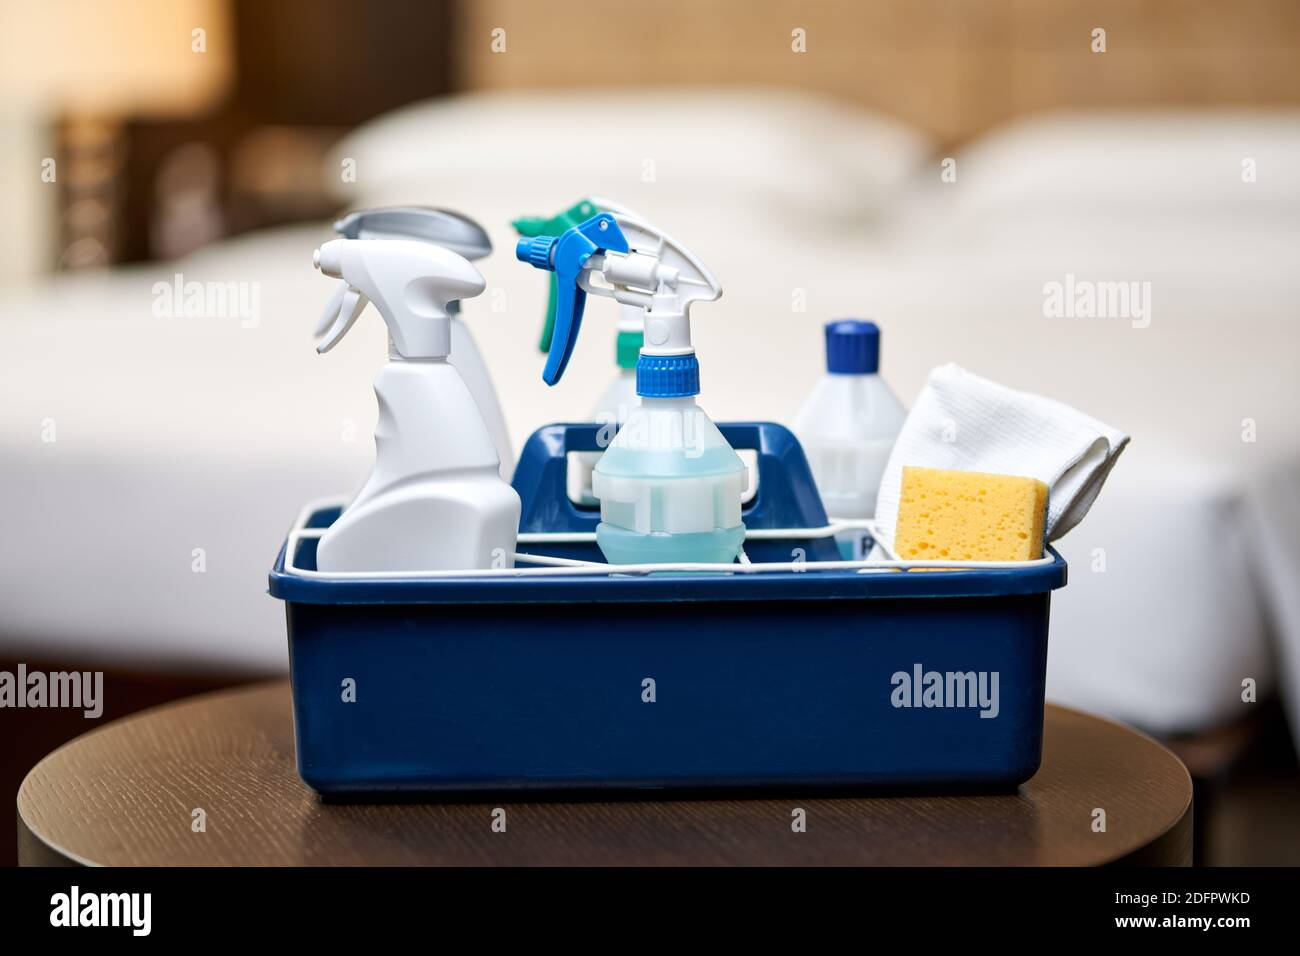 Eimer von Produkten mit verschiedenen Desinfektionsmitteln zur Reinigung während der Quarantäne. Housekeeping- und Hygienekonzept Stockfoto